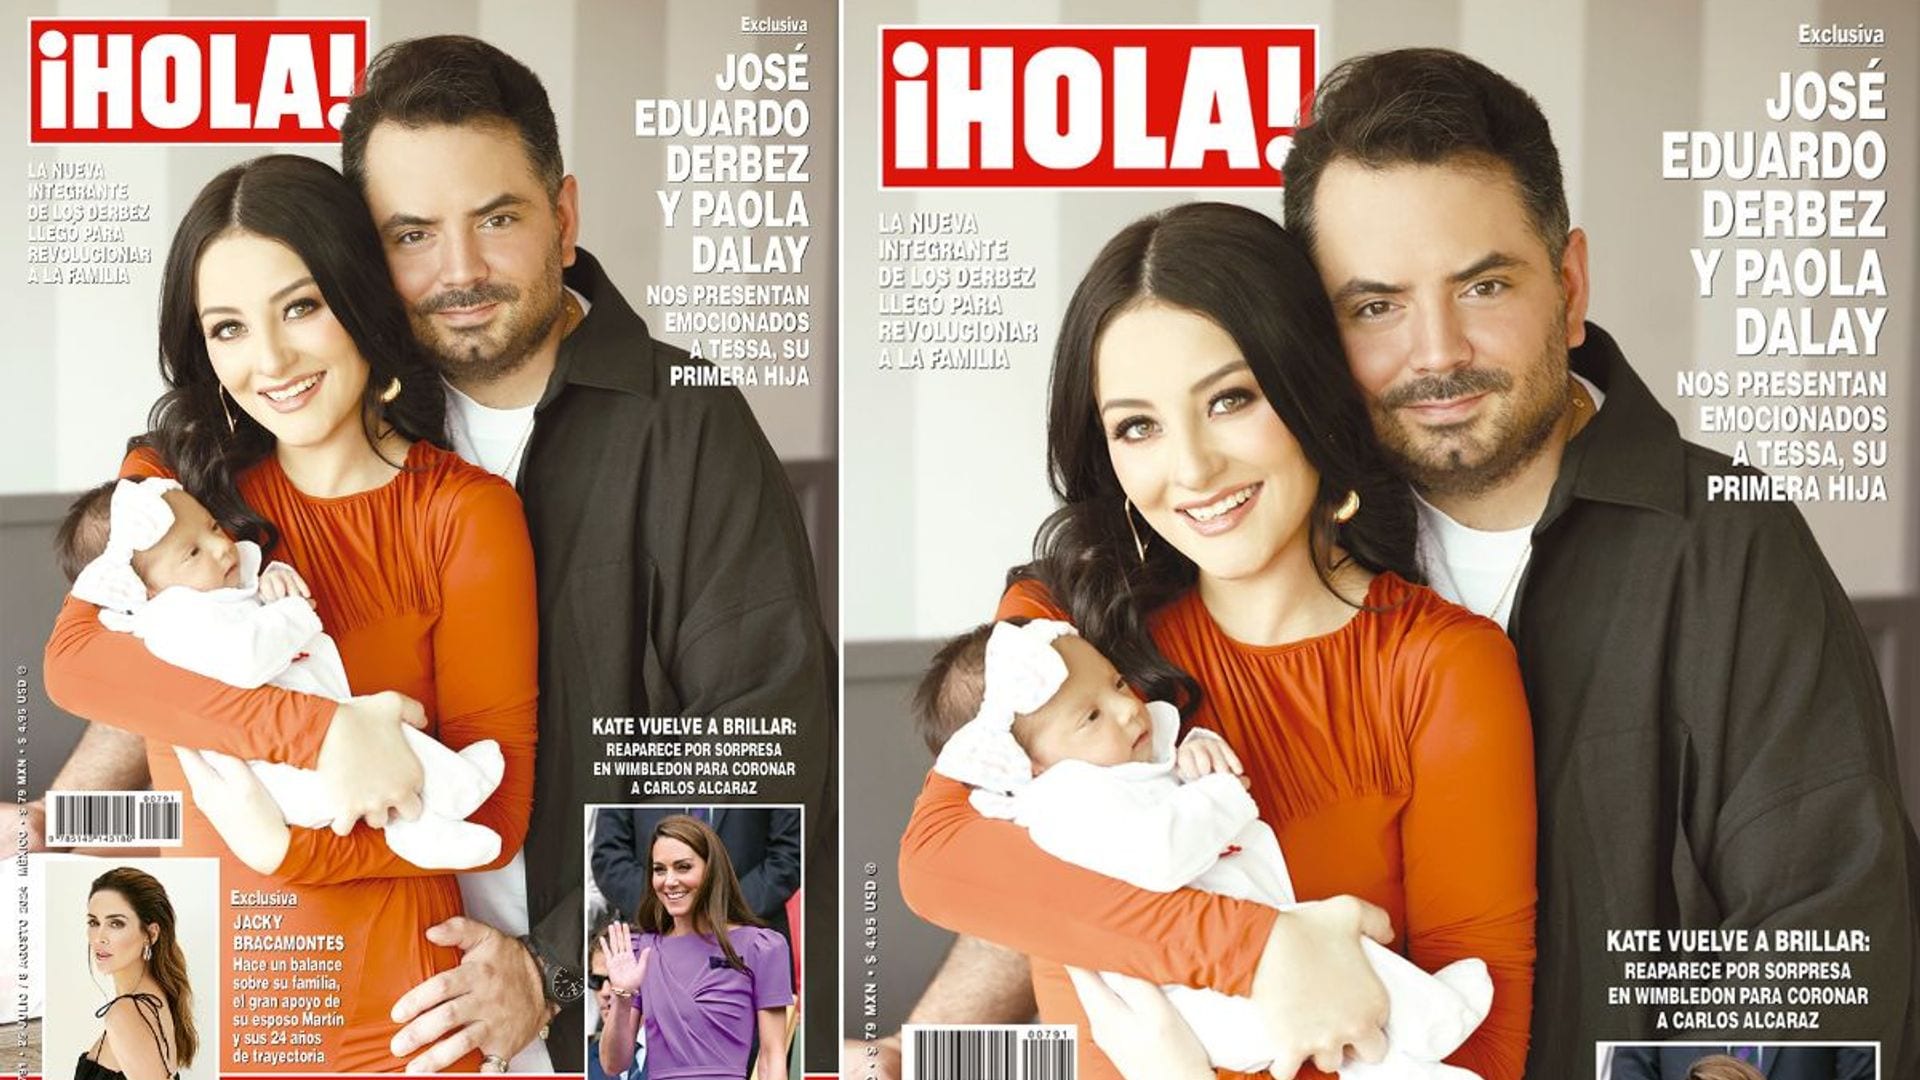 En ¡HOLA, José Eduardo Derbez y Paola Dalay nos presentan emocionados a Tessa, su primera hija